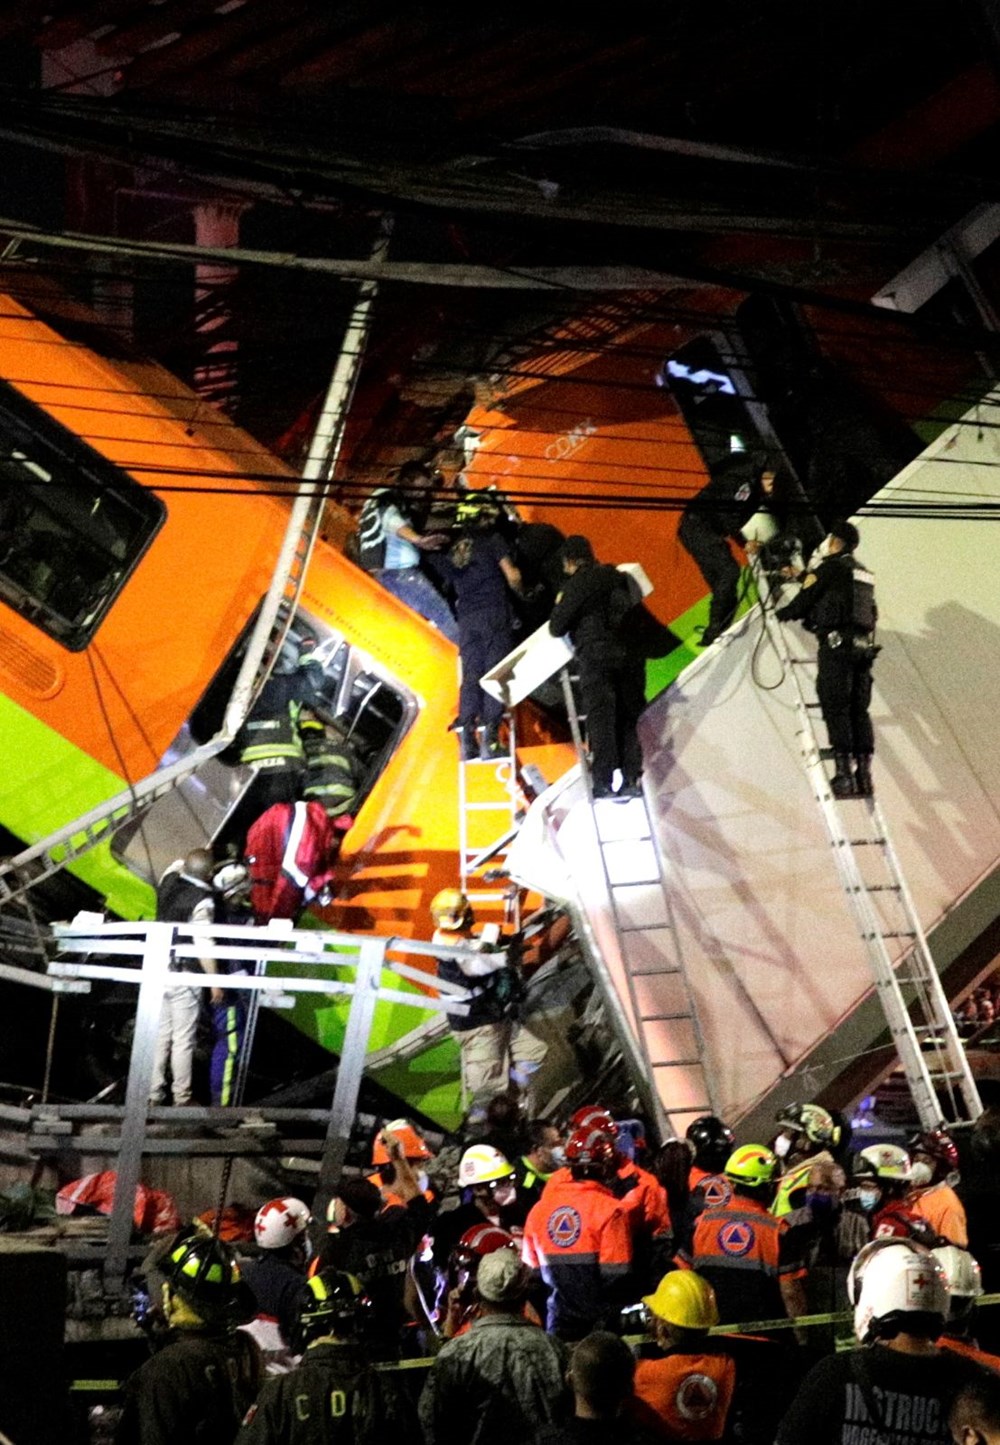 Meksika'da tren raylarını taşıyan üst geçit çöktü: 15 kişi öldü, 70 kişi yaralandı - 10